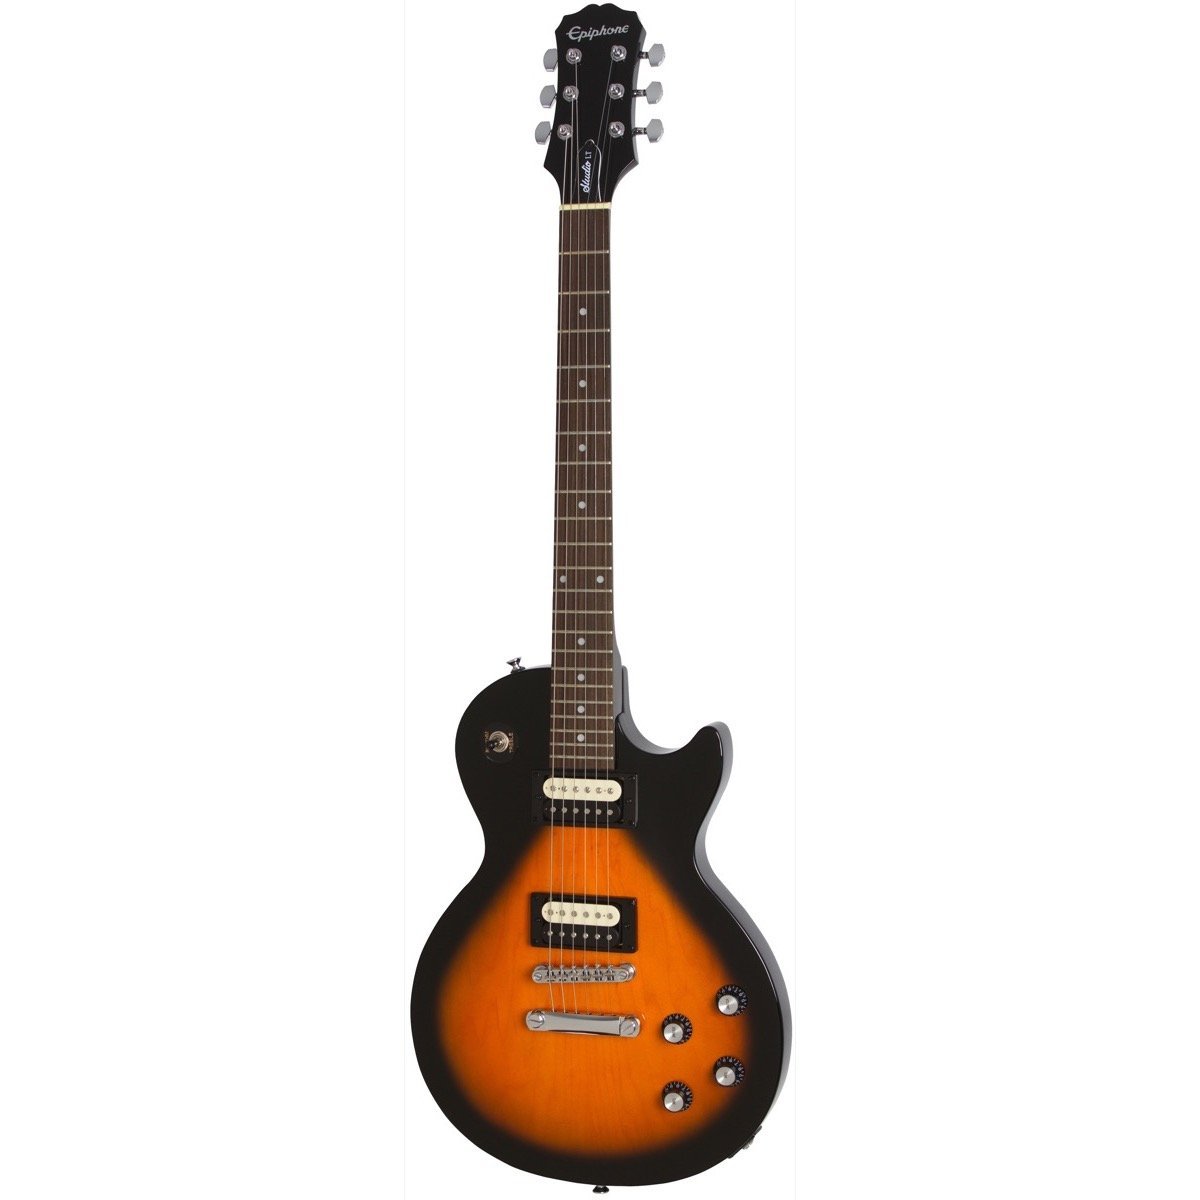 Epiphone Les Paul Studio LT Electric Guitar, Vintage Sunburst